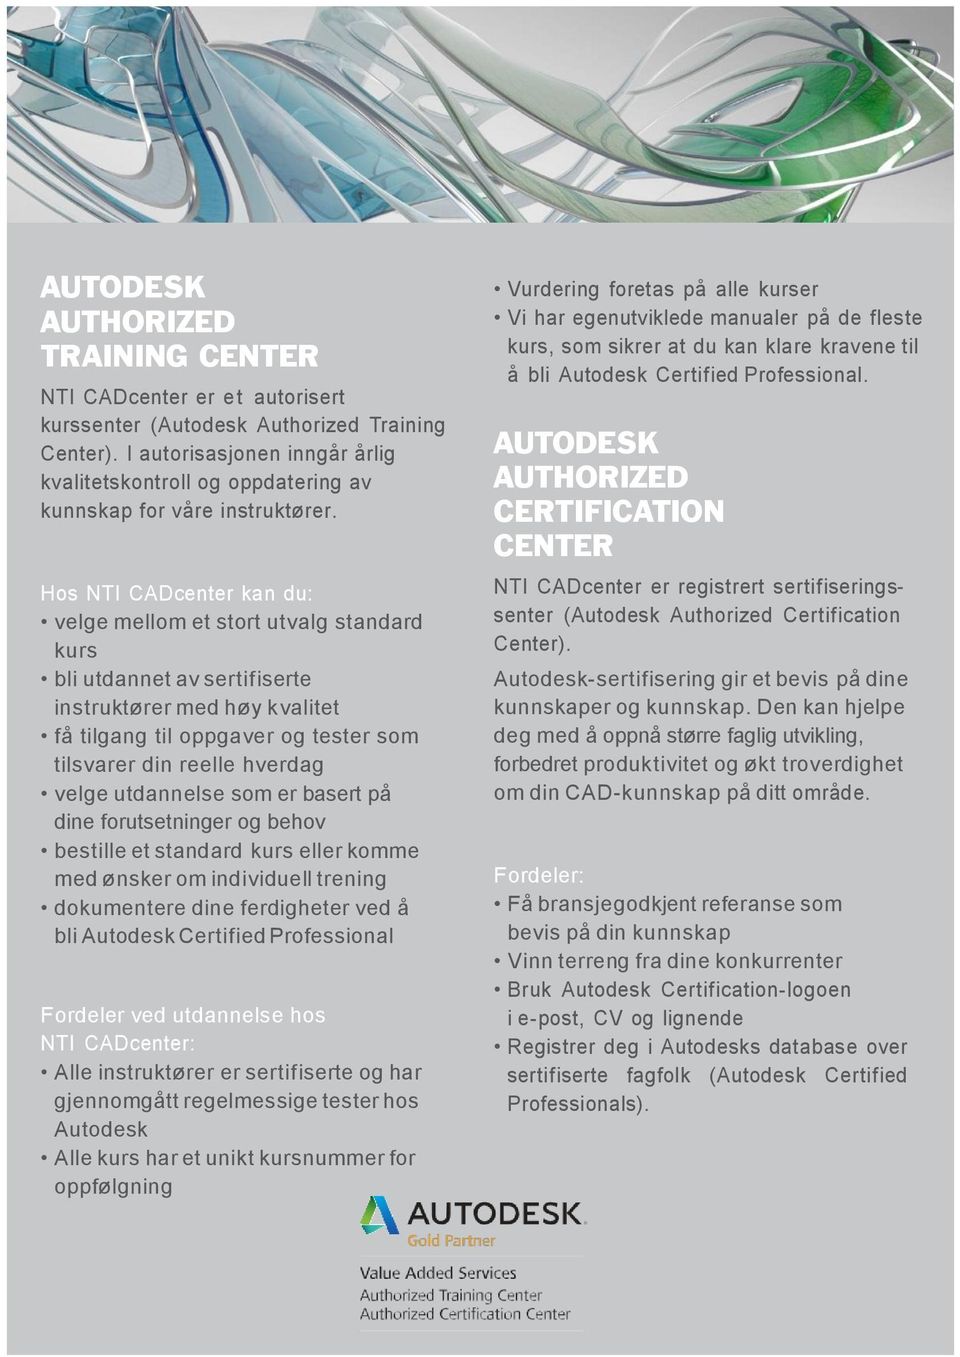 Hos NTI CADcenter kan du: velge mellom et stort utvalg standard kurs bli utdannet av sertifiserte instruktører med høy kvalitet få tilgang til oppgaver og tester som tilsvarer din reelle hverdag